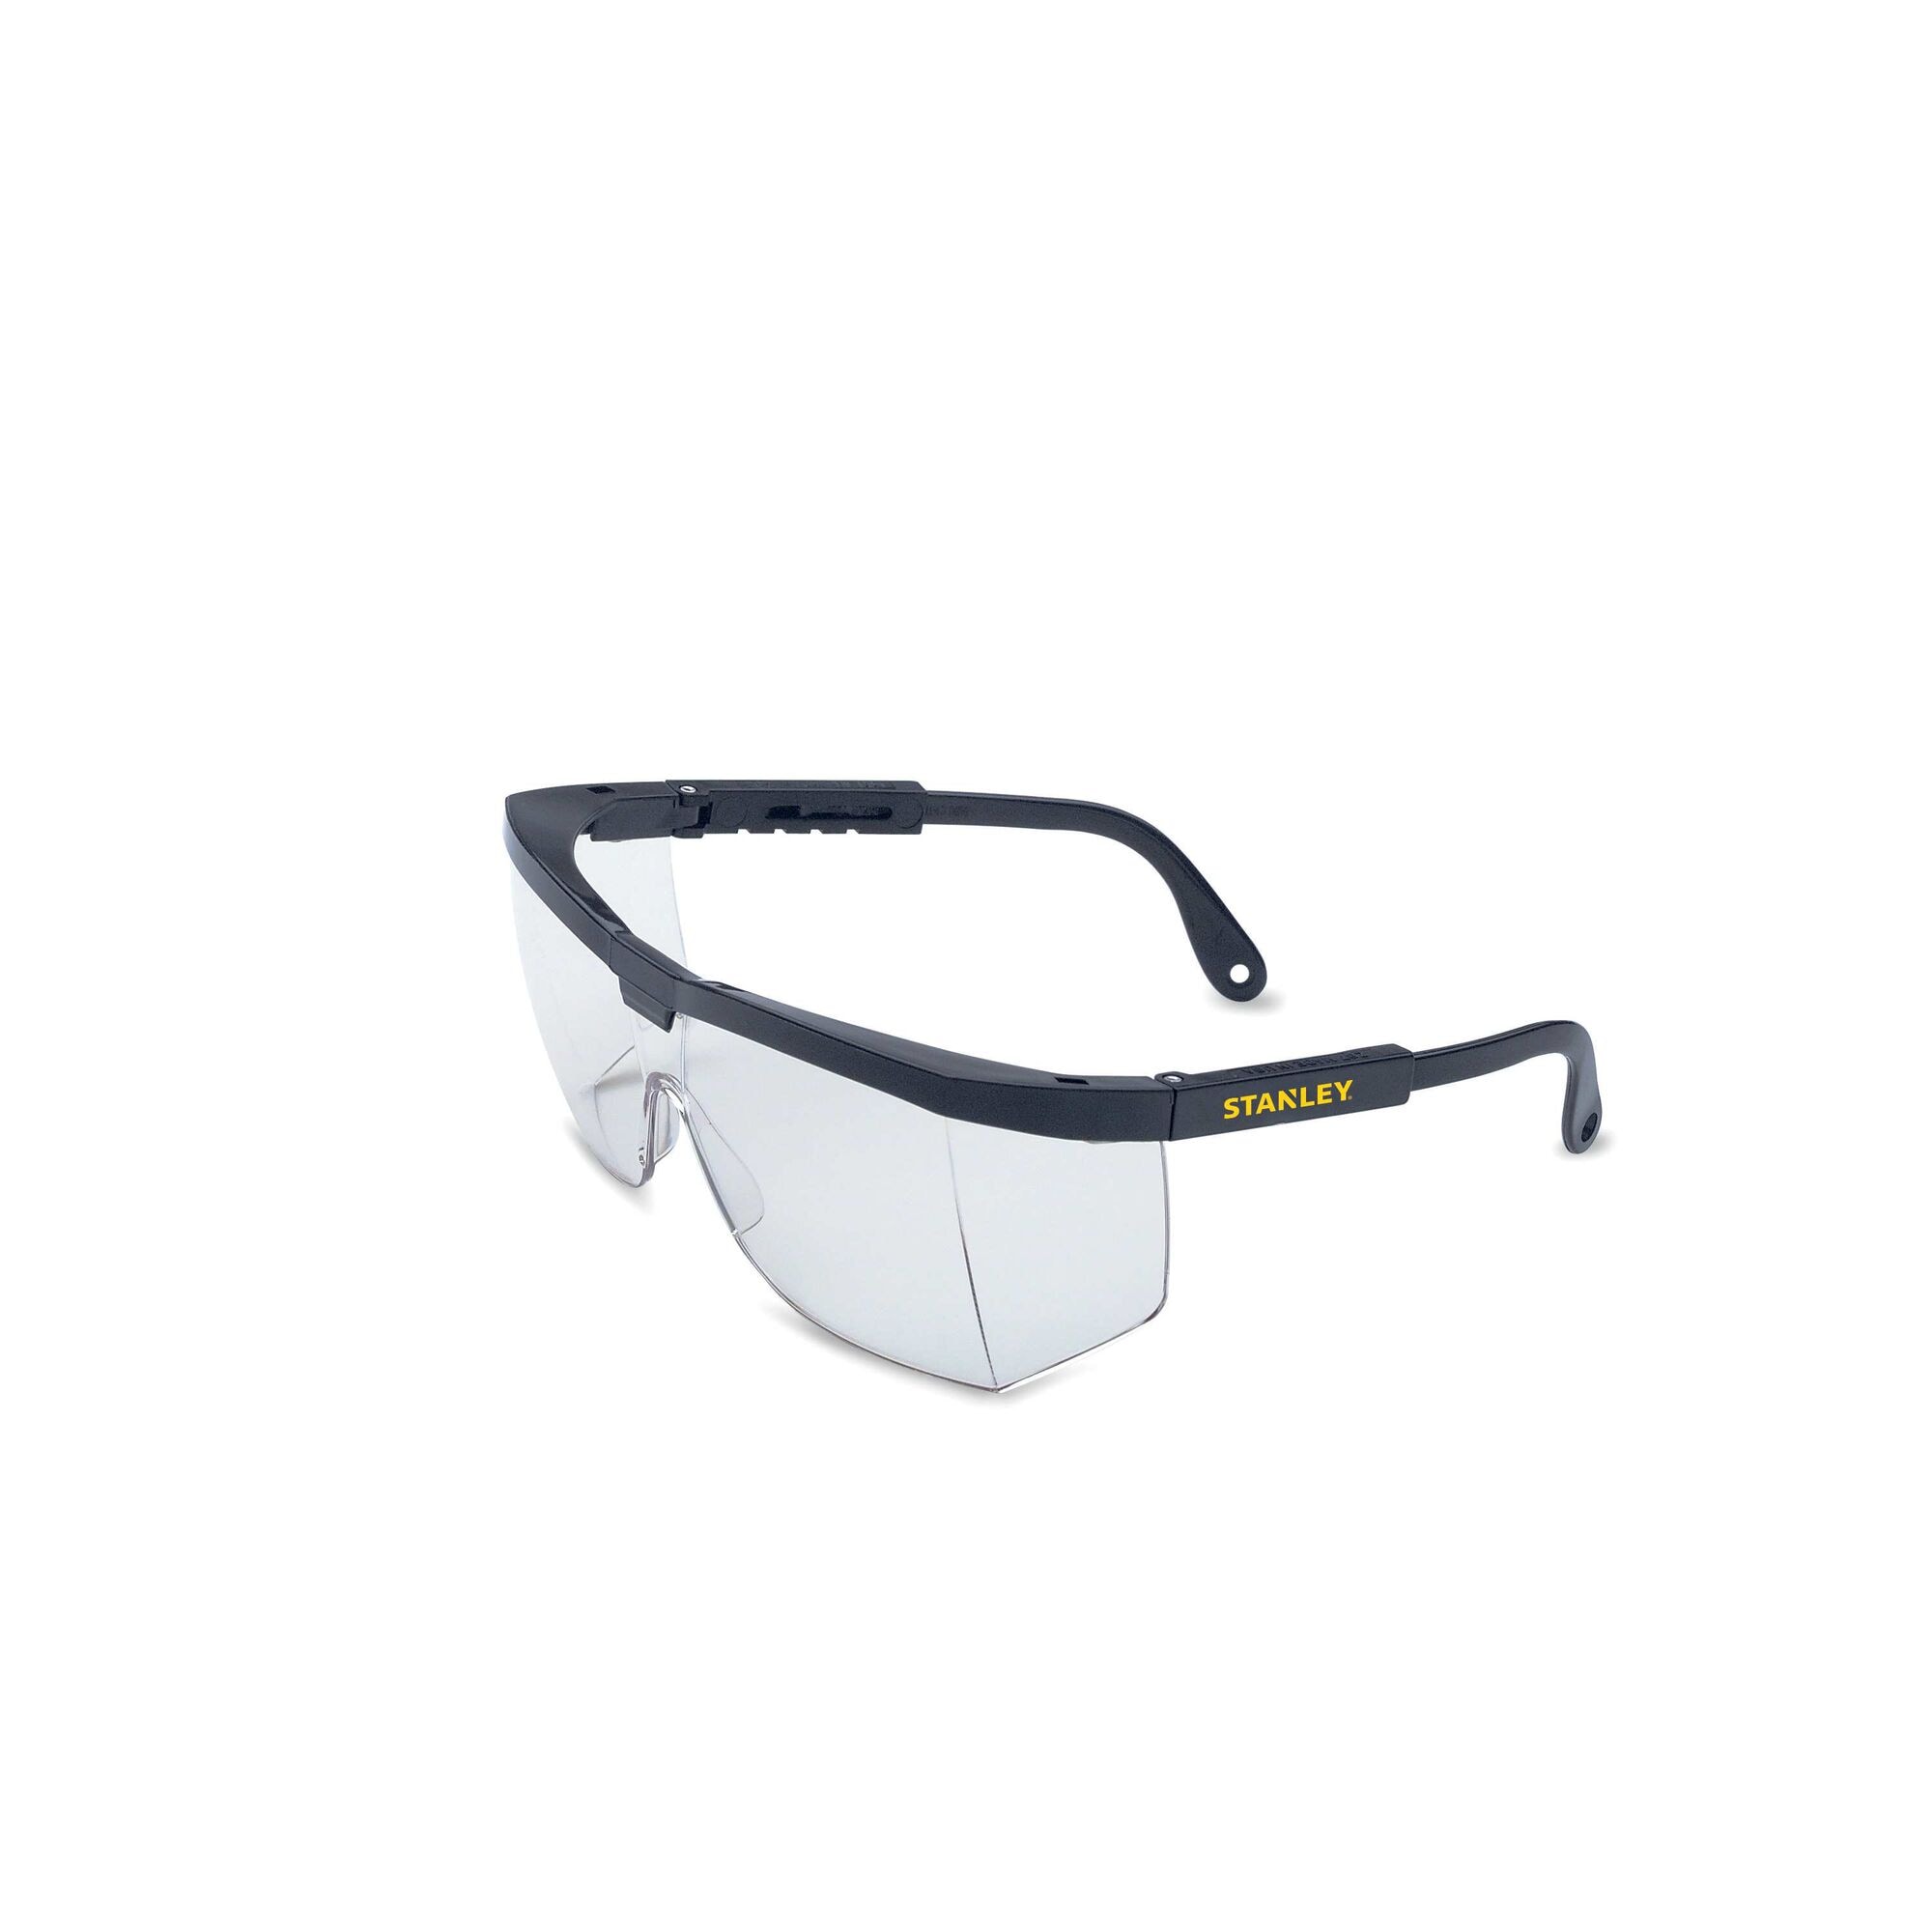 Stanley Safety Glasses Bandit Clear Lens Black Frame Premium Comfort RST-61008 